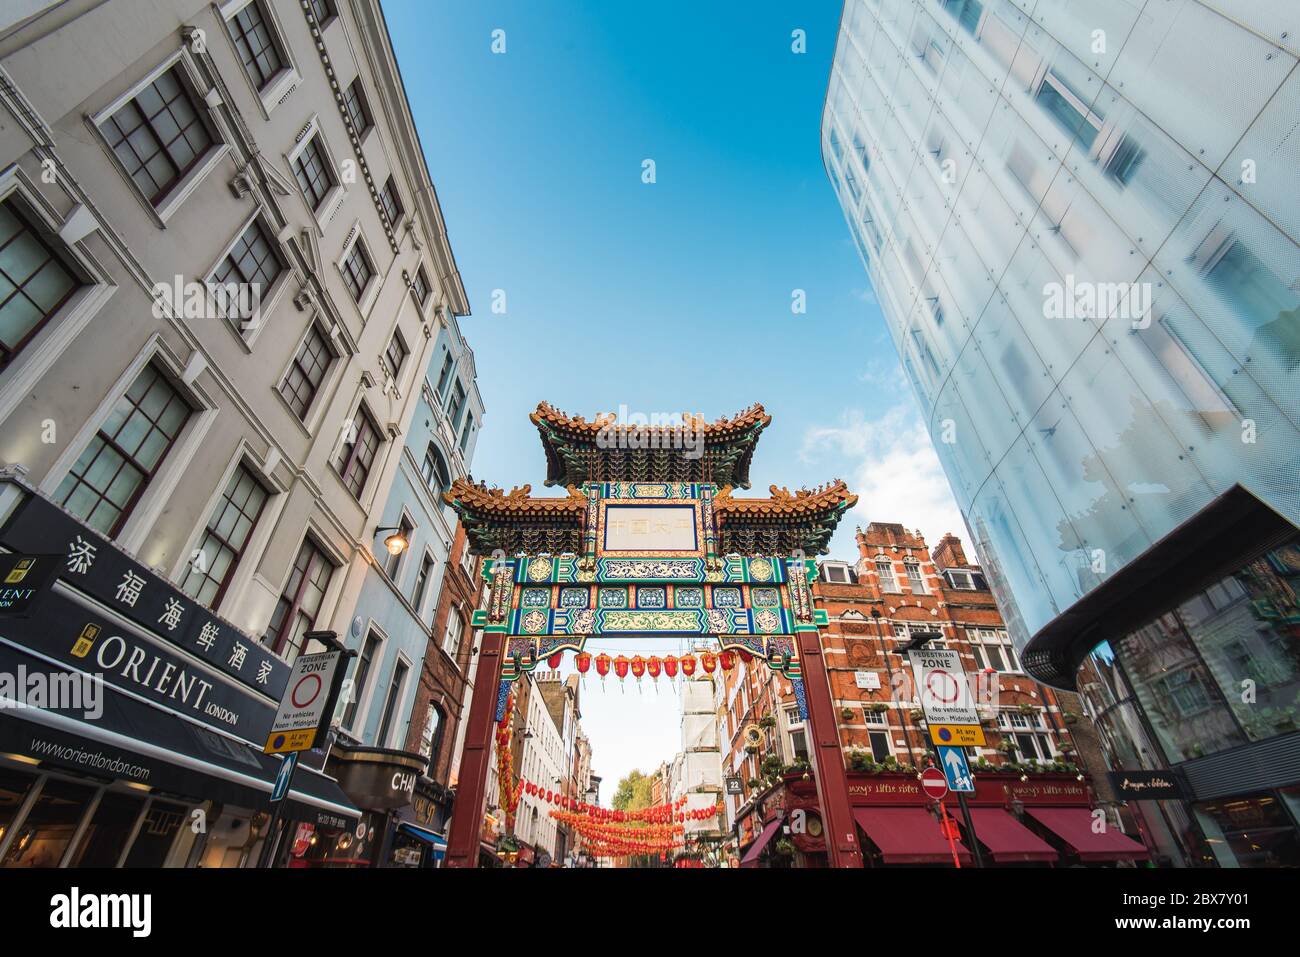 Londra, UK - 19 ottobre 2019: Ingresso alla zona di Chinatown, una popolare destinazione turistica di Londra. Foto Stock